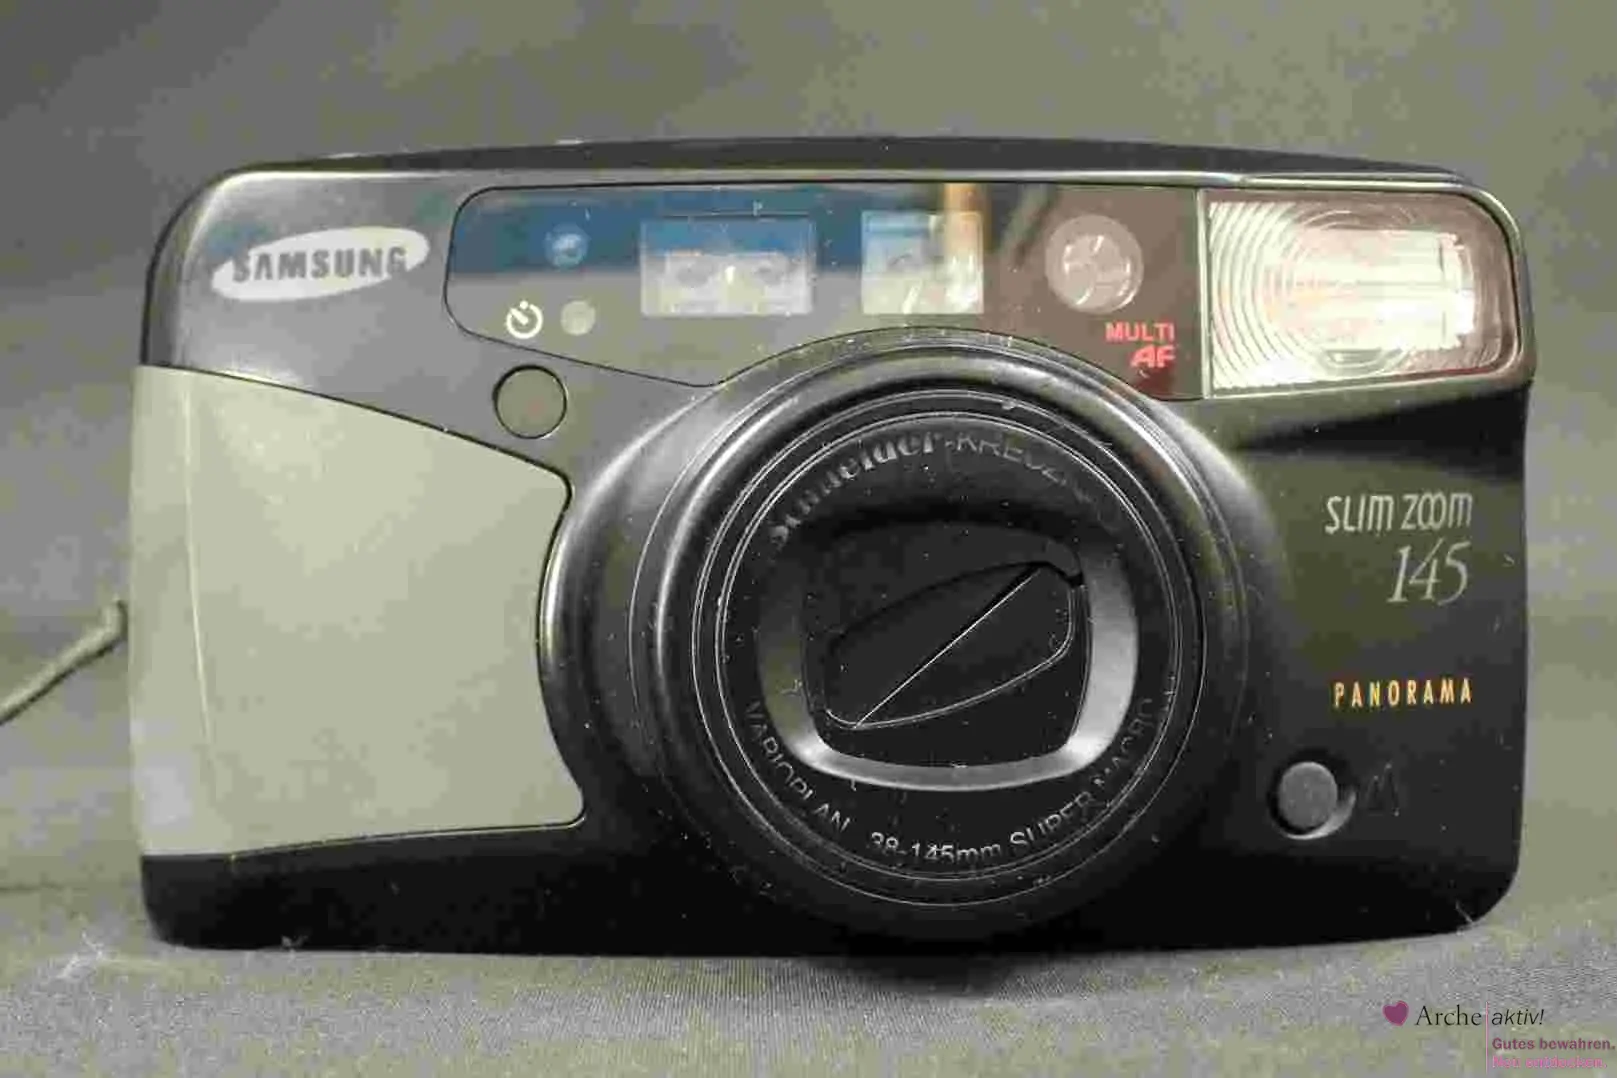 Samsung Slim Zoom 145 - Panoramakamera, gebraucht